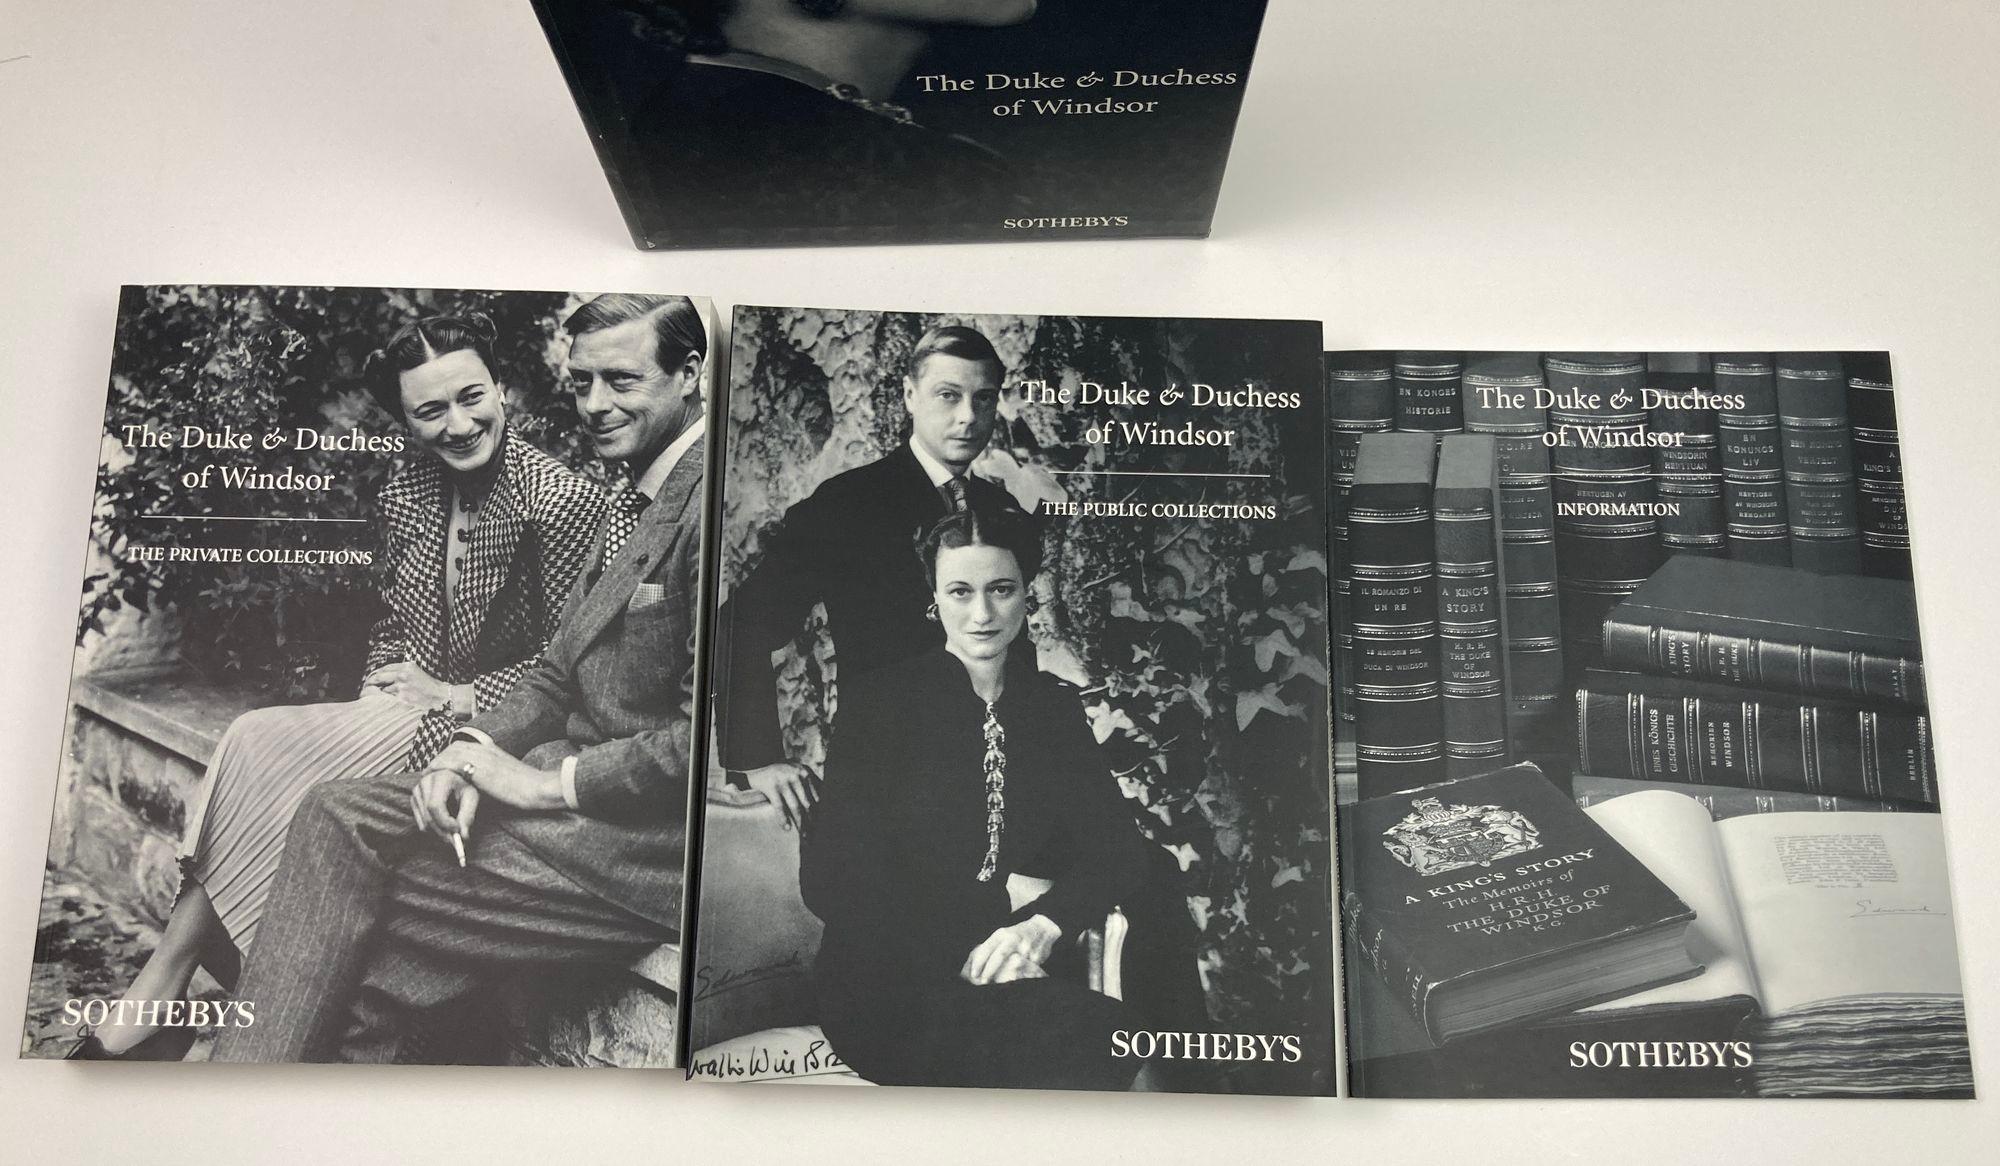 Papier The Duke and Duchess of Windsor Auction Sotheby's Books Catalogs in Slipcase Box (Le duc et la duchesse de Windsor, ventes aux enchères, catalogues de livres de Sotheby's dans une boîte) en vente